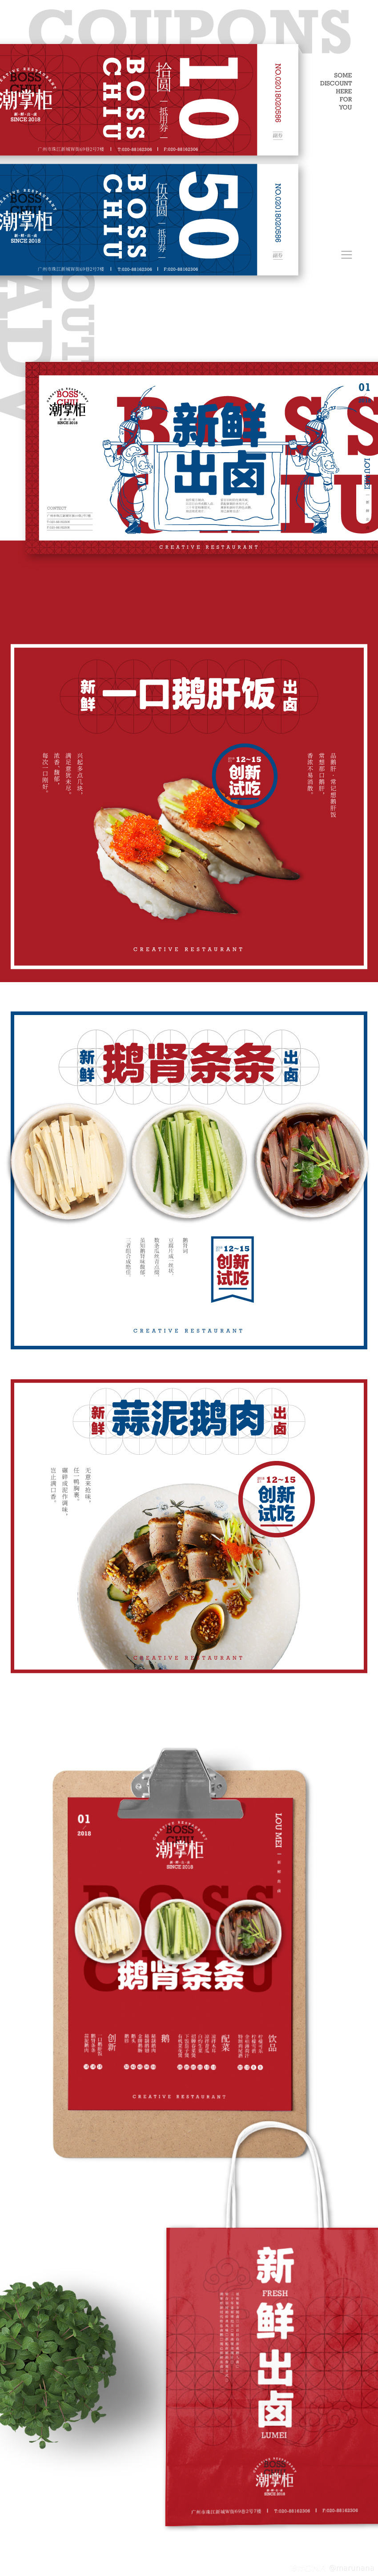 潮掌柜／潮汕卤水鹅餐饮品牌设计 图3